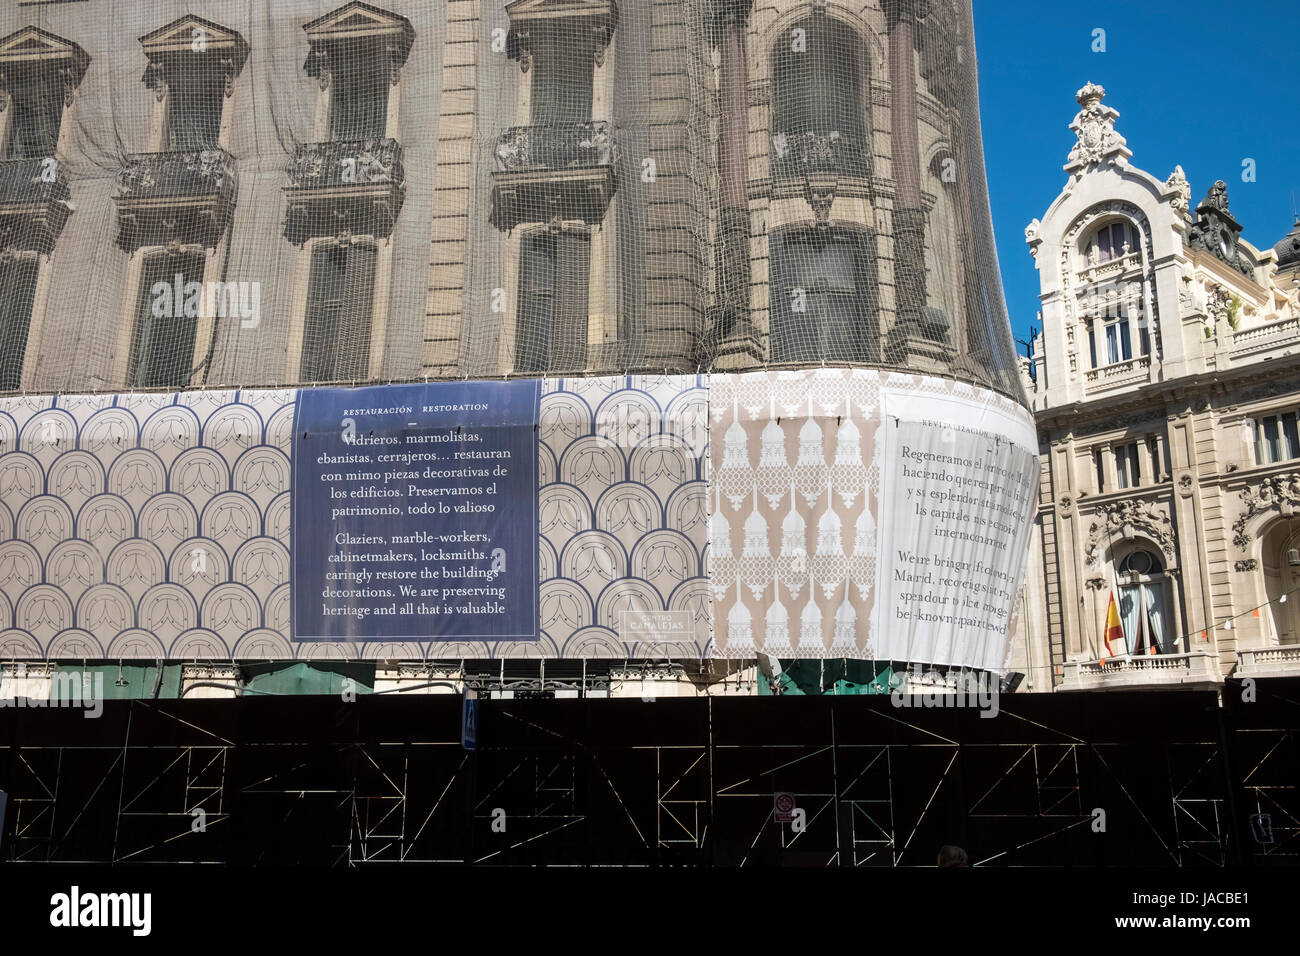 Costruzione di lavori di restauro per il ripristino del patrimonio architettonico dettagli degli edifici di Madrid in Spagna. Foto Stock